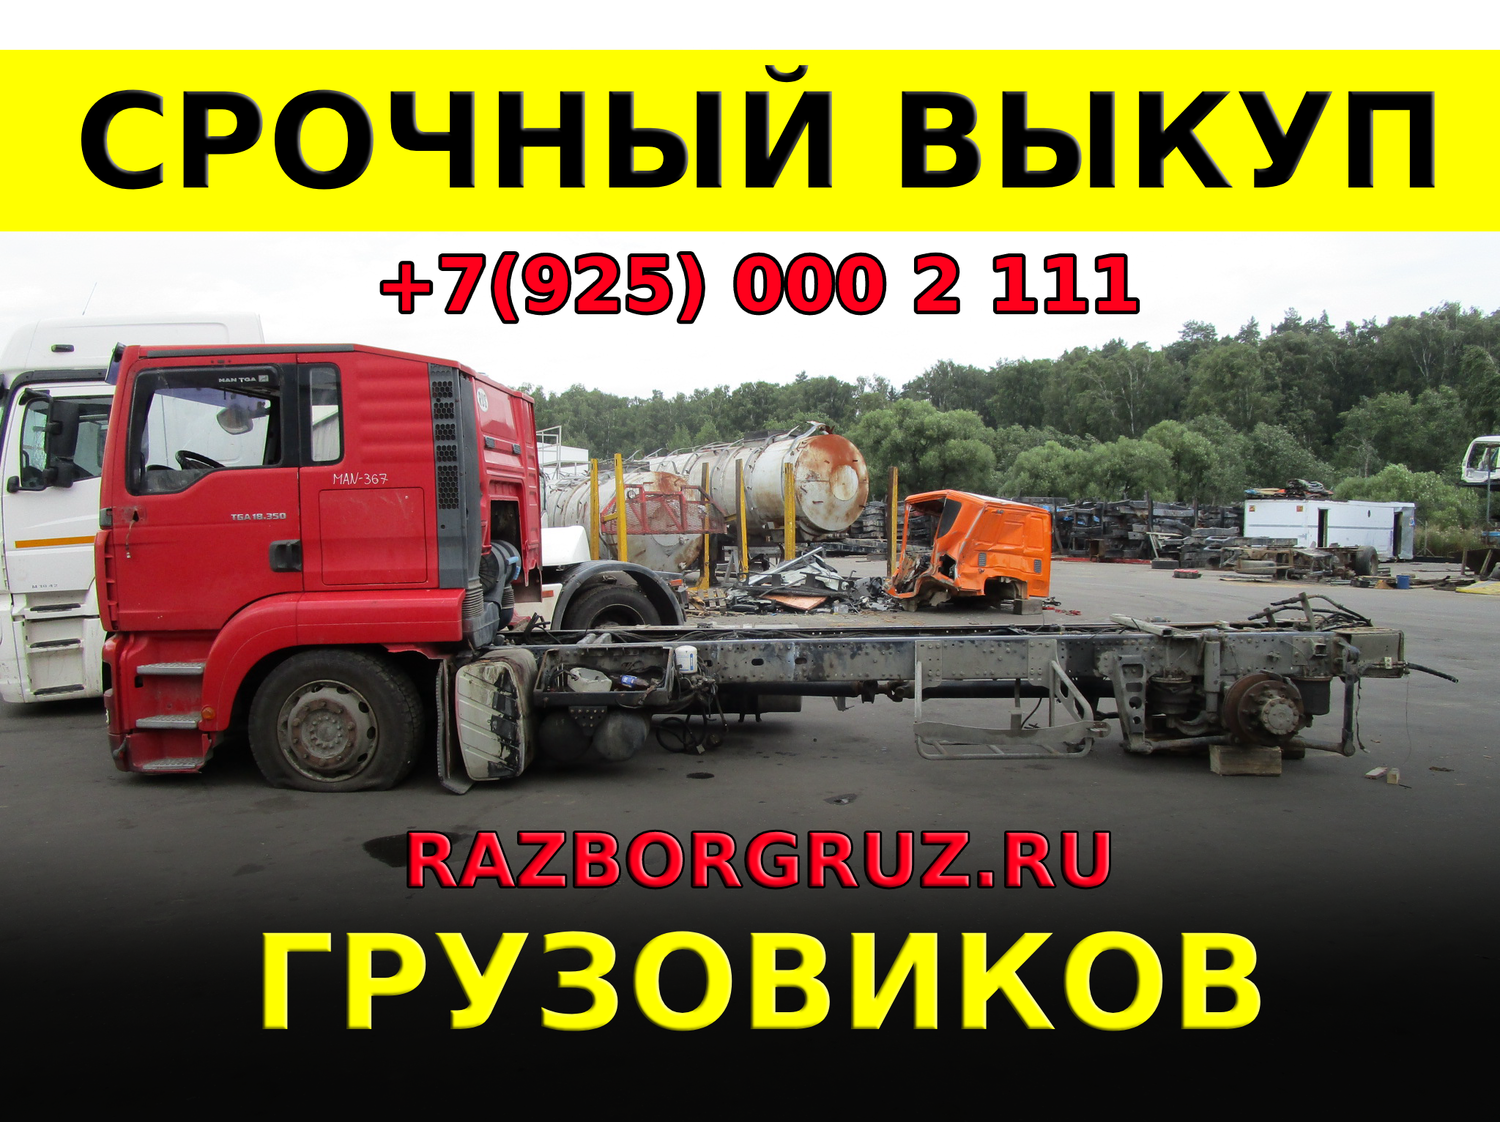 Срочный Выкуп битых грузовых автомобилей тягачей грузовиков фур +7(925)0002111